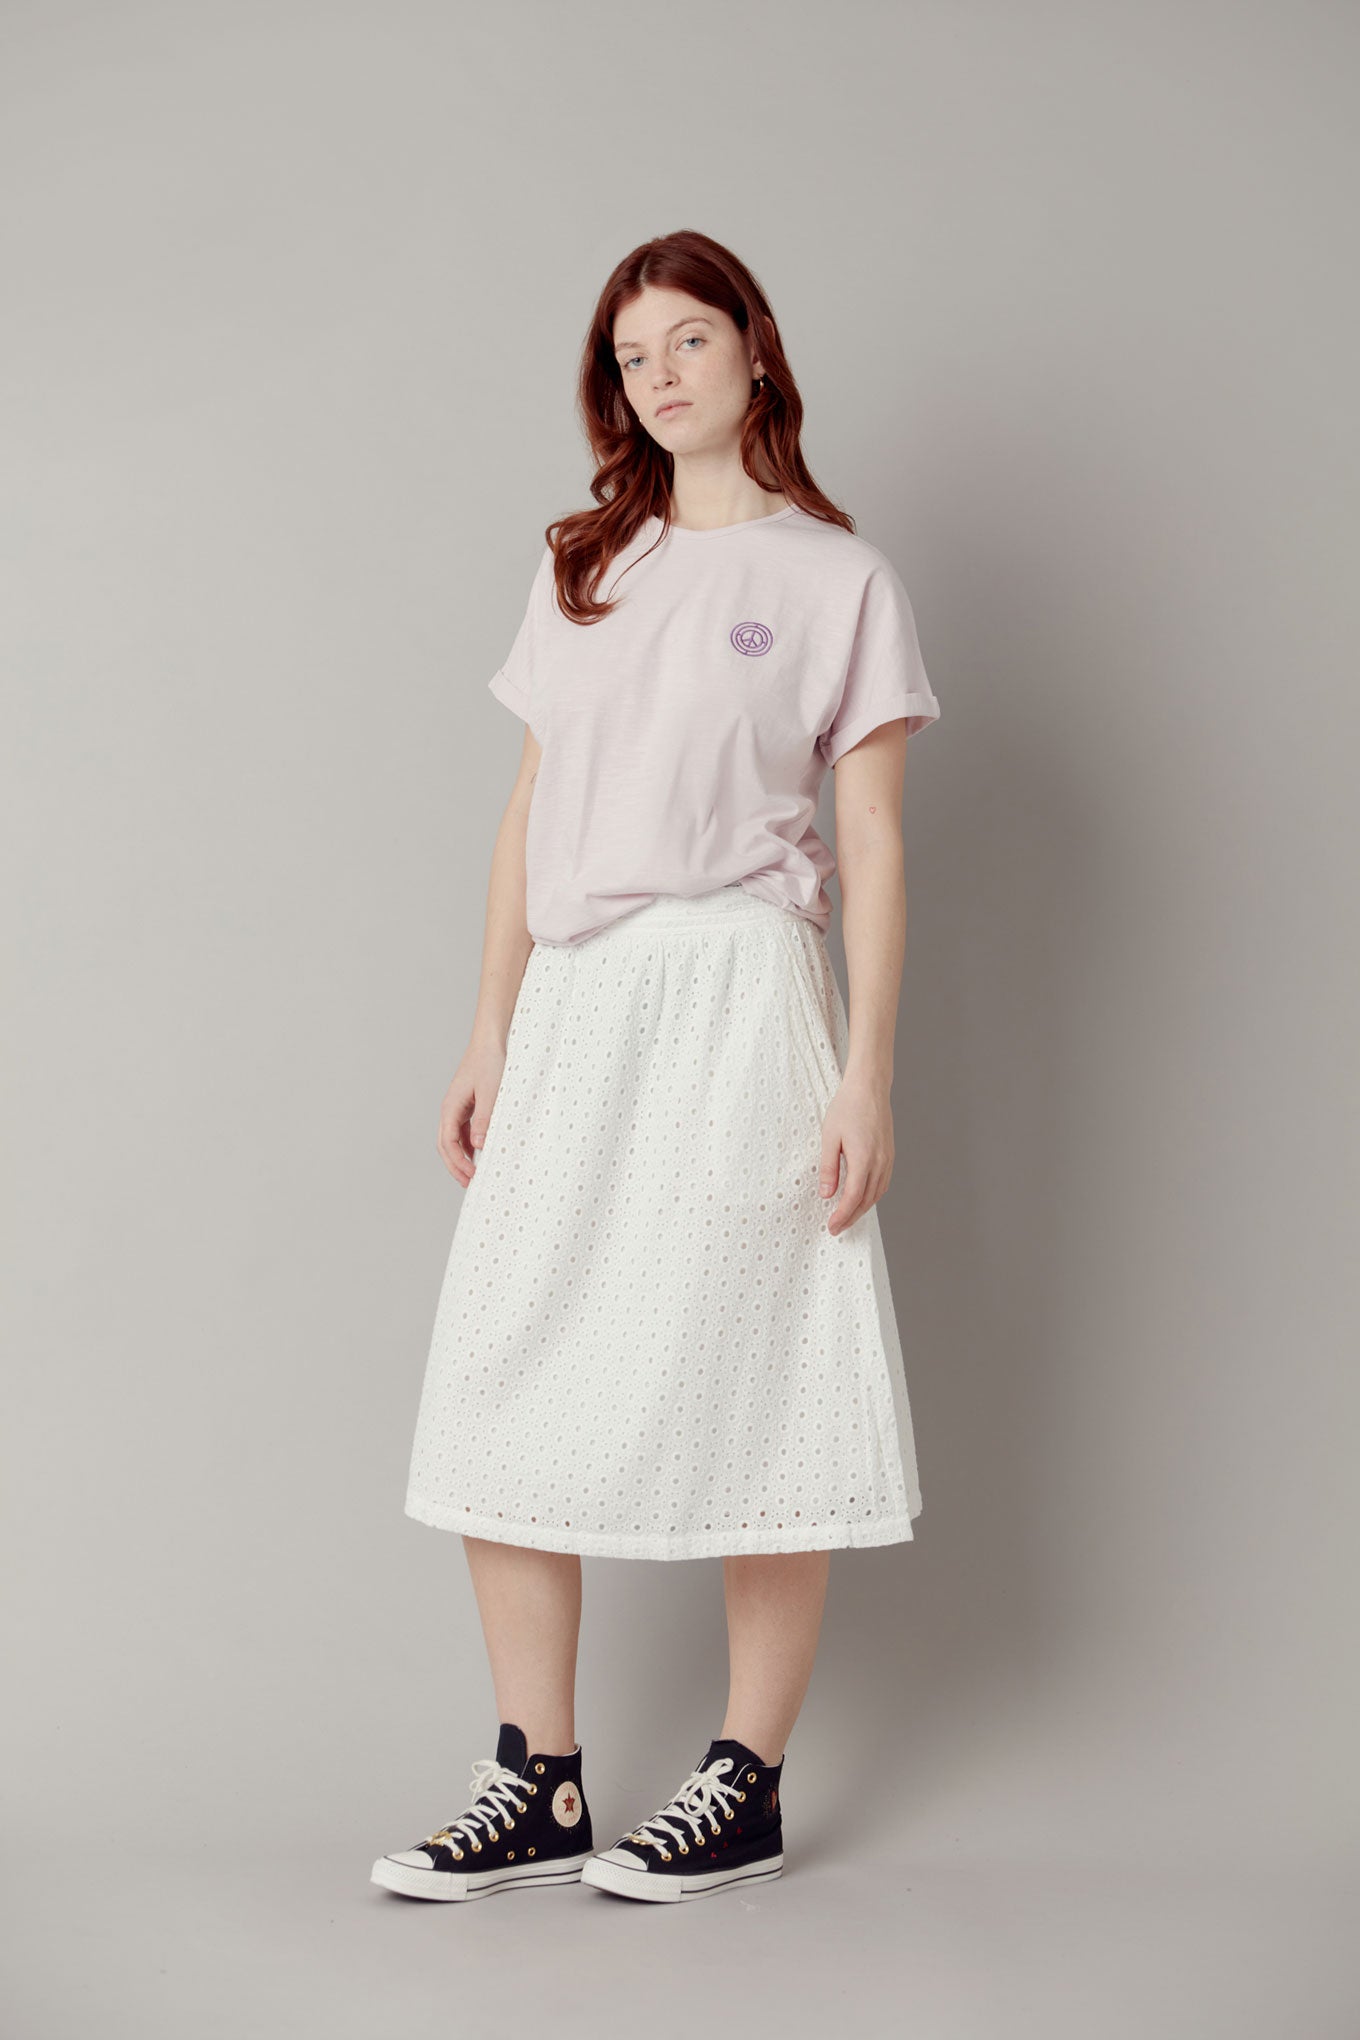 NAMI Organic Cotton Midi Skirt - White, SIZE 3 / UK 12 / EUR 40